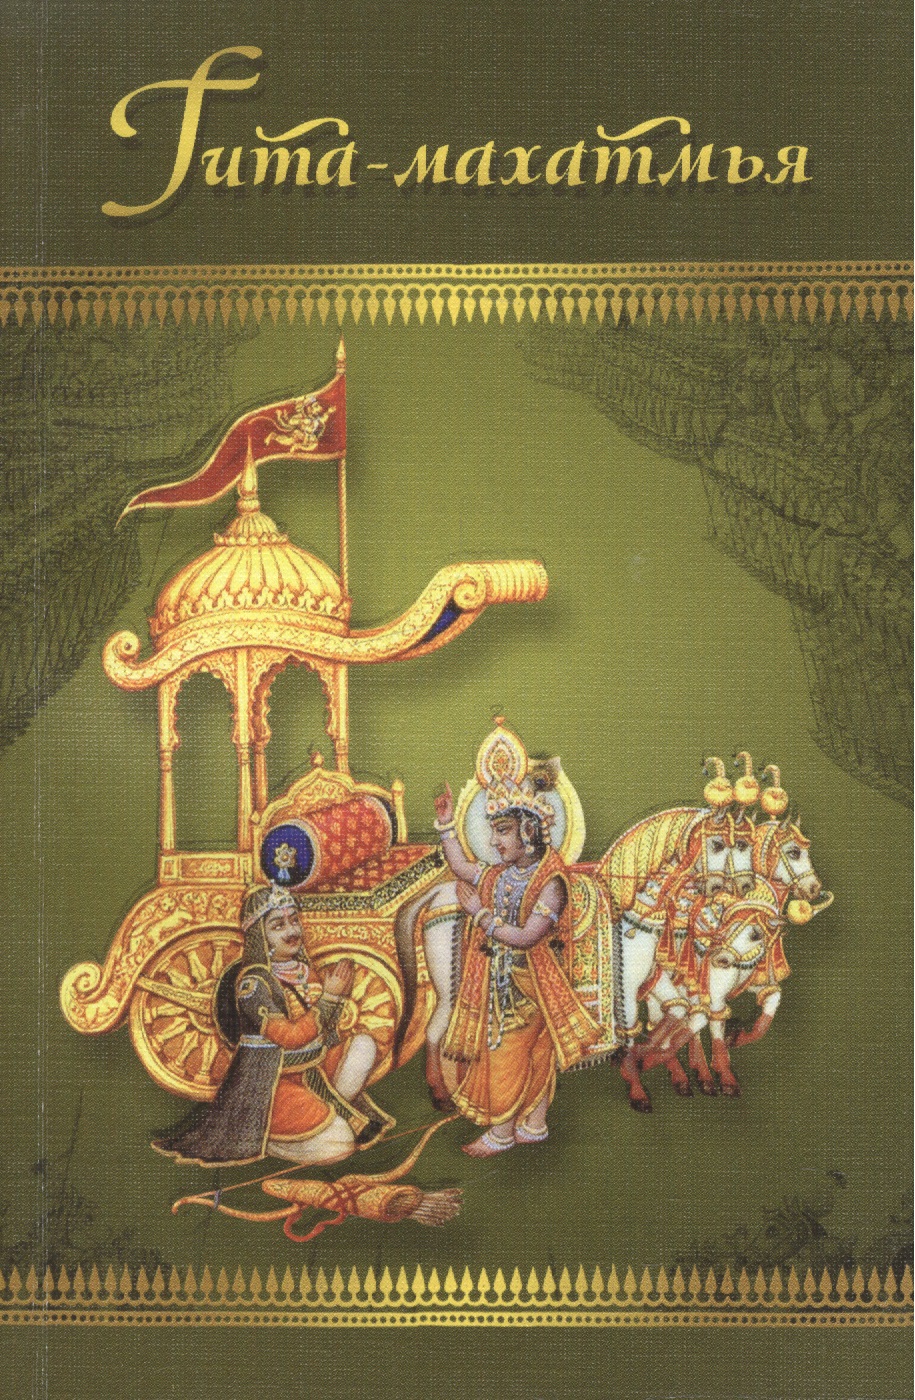 Гита-махатмья. Прославление Бхагавад-гиты из Падма-пураны бхагавад гита или песнь господня